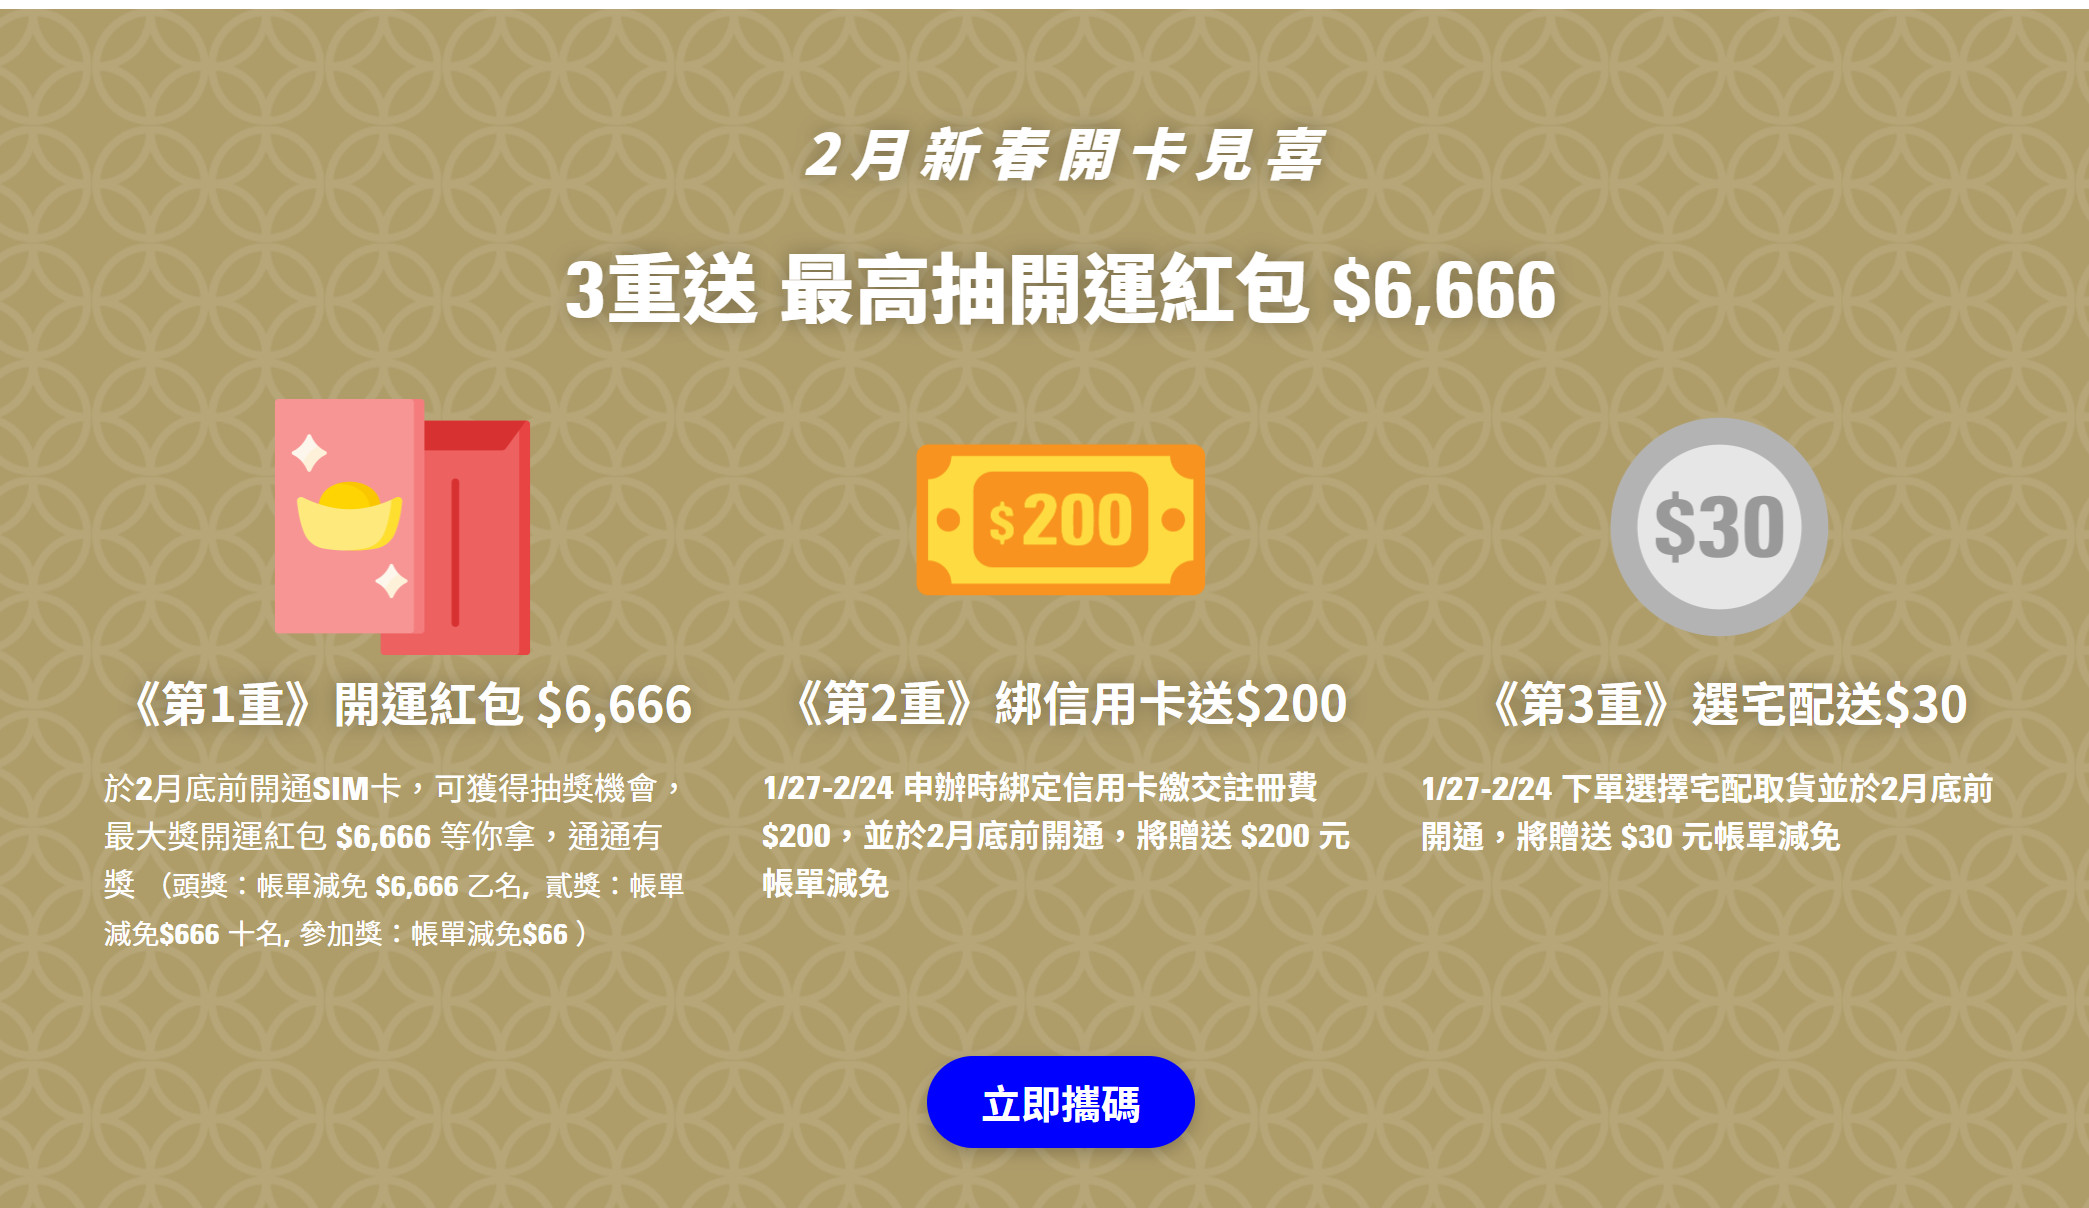 【無框行動】新春專案，中華電信大4G網路吃到飽466元，低流量只要166元!超適合搭配台灣之星雙11專案。 - 中華電信資費最便宜 - 敗家達人推薦